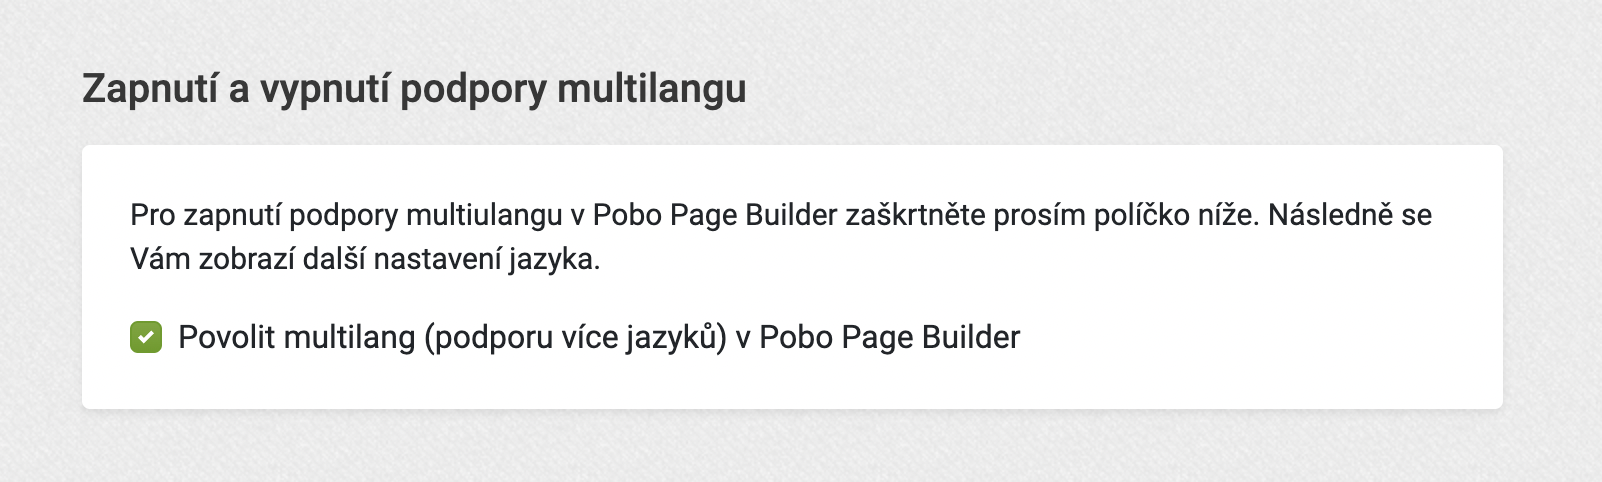 Novinka v Pobo Page Builder - multijazyčnost popisků s automatickými překlady DeepL